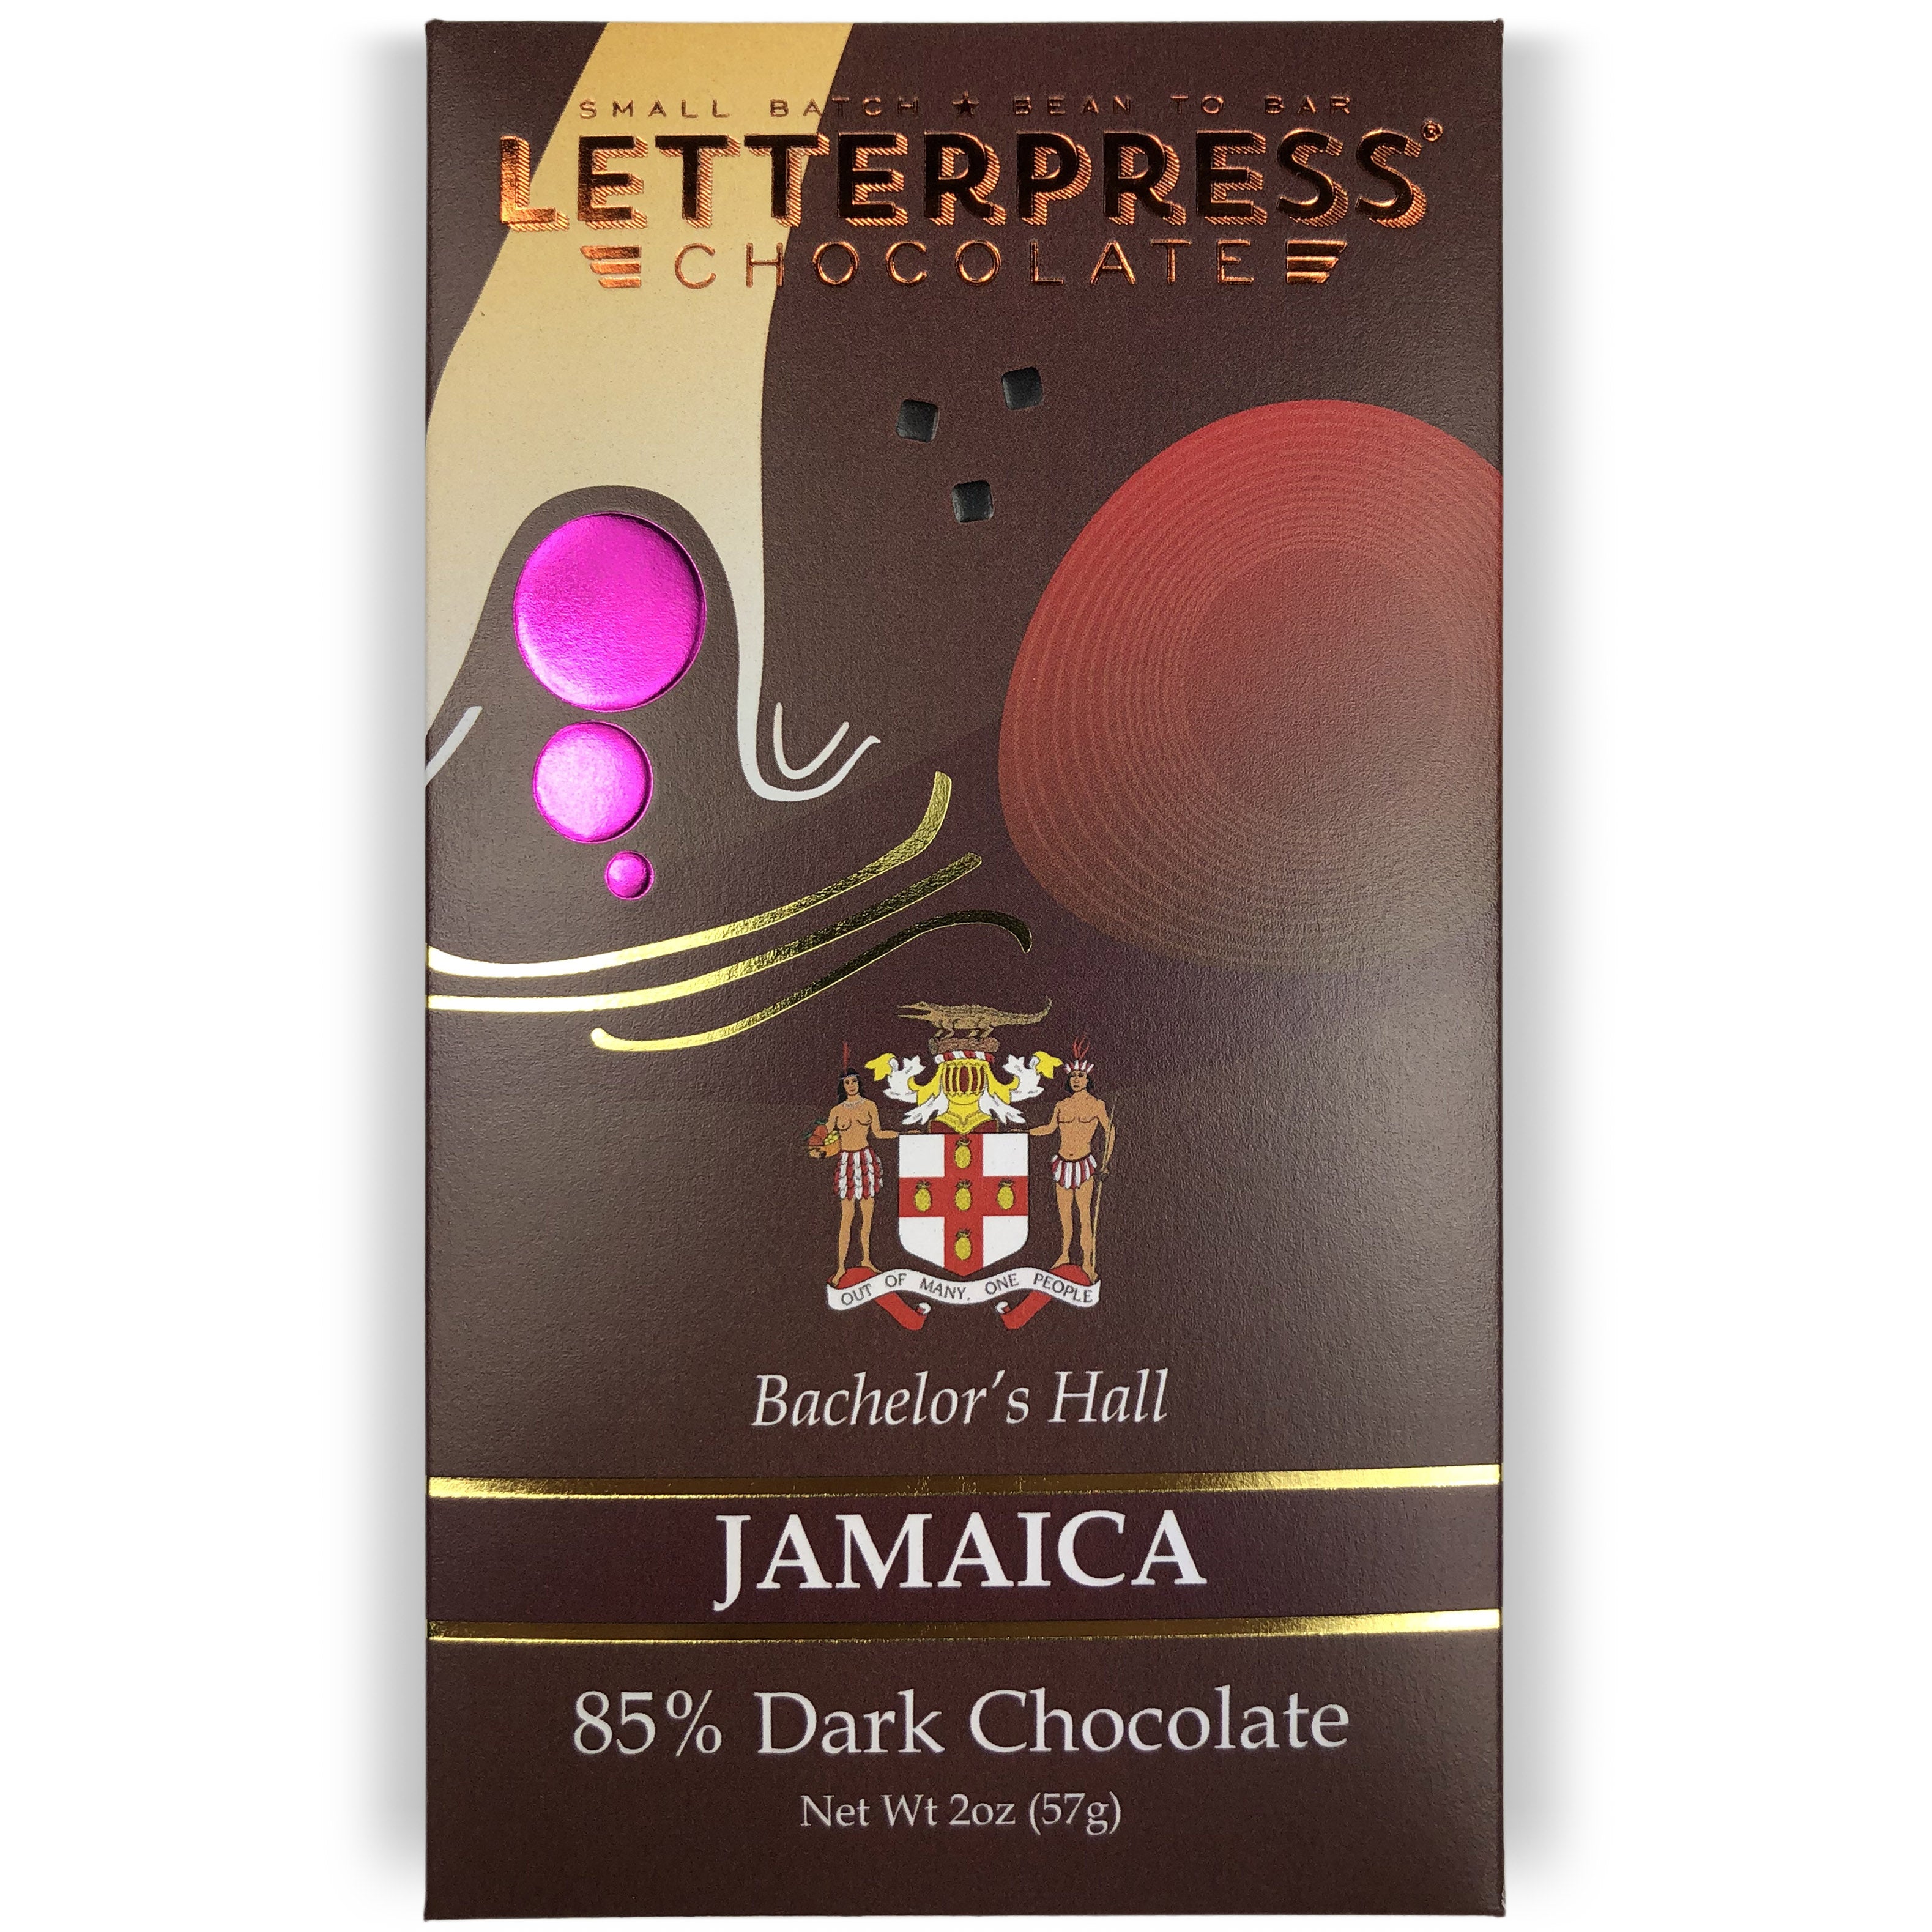 Photo of Jamaica 85% Dark Chocolate packaging